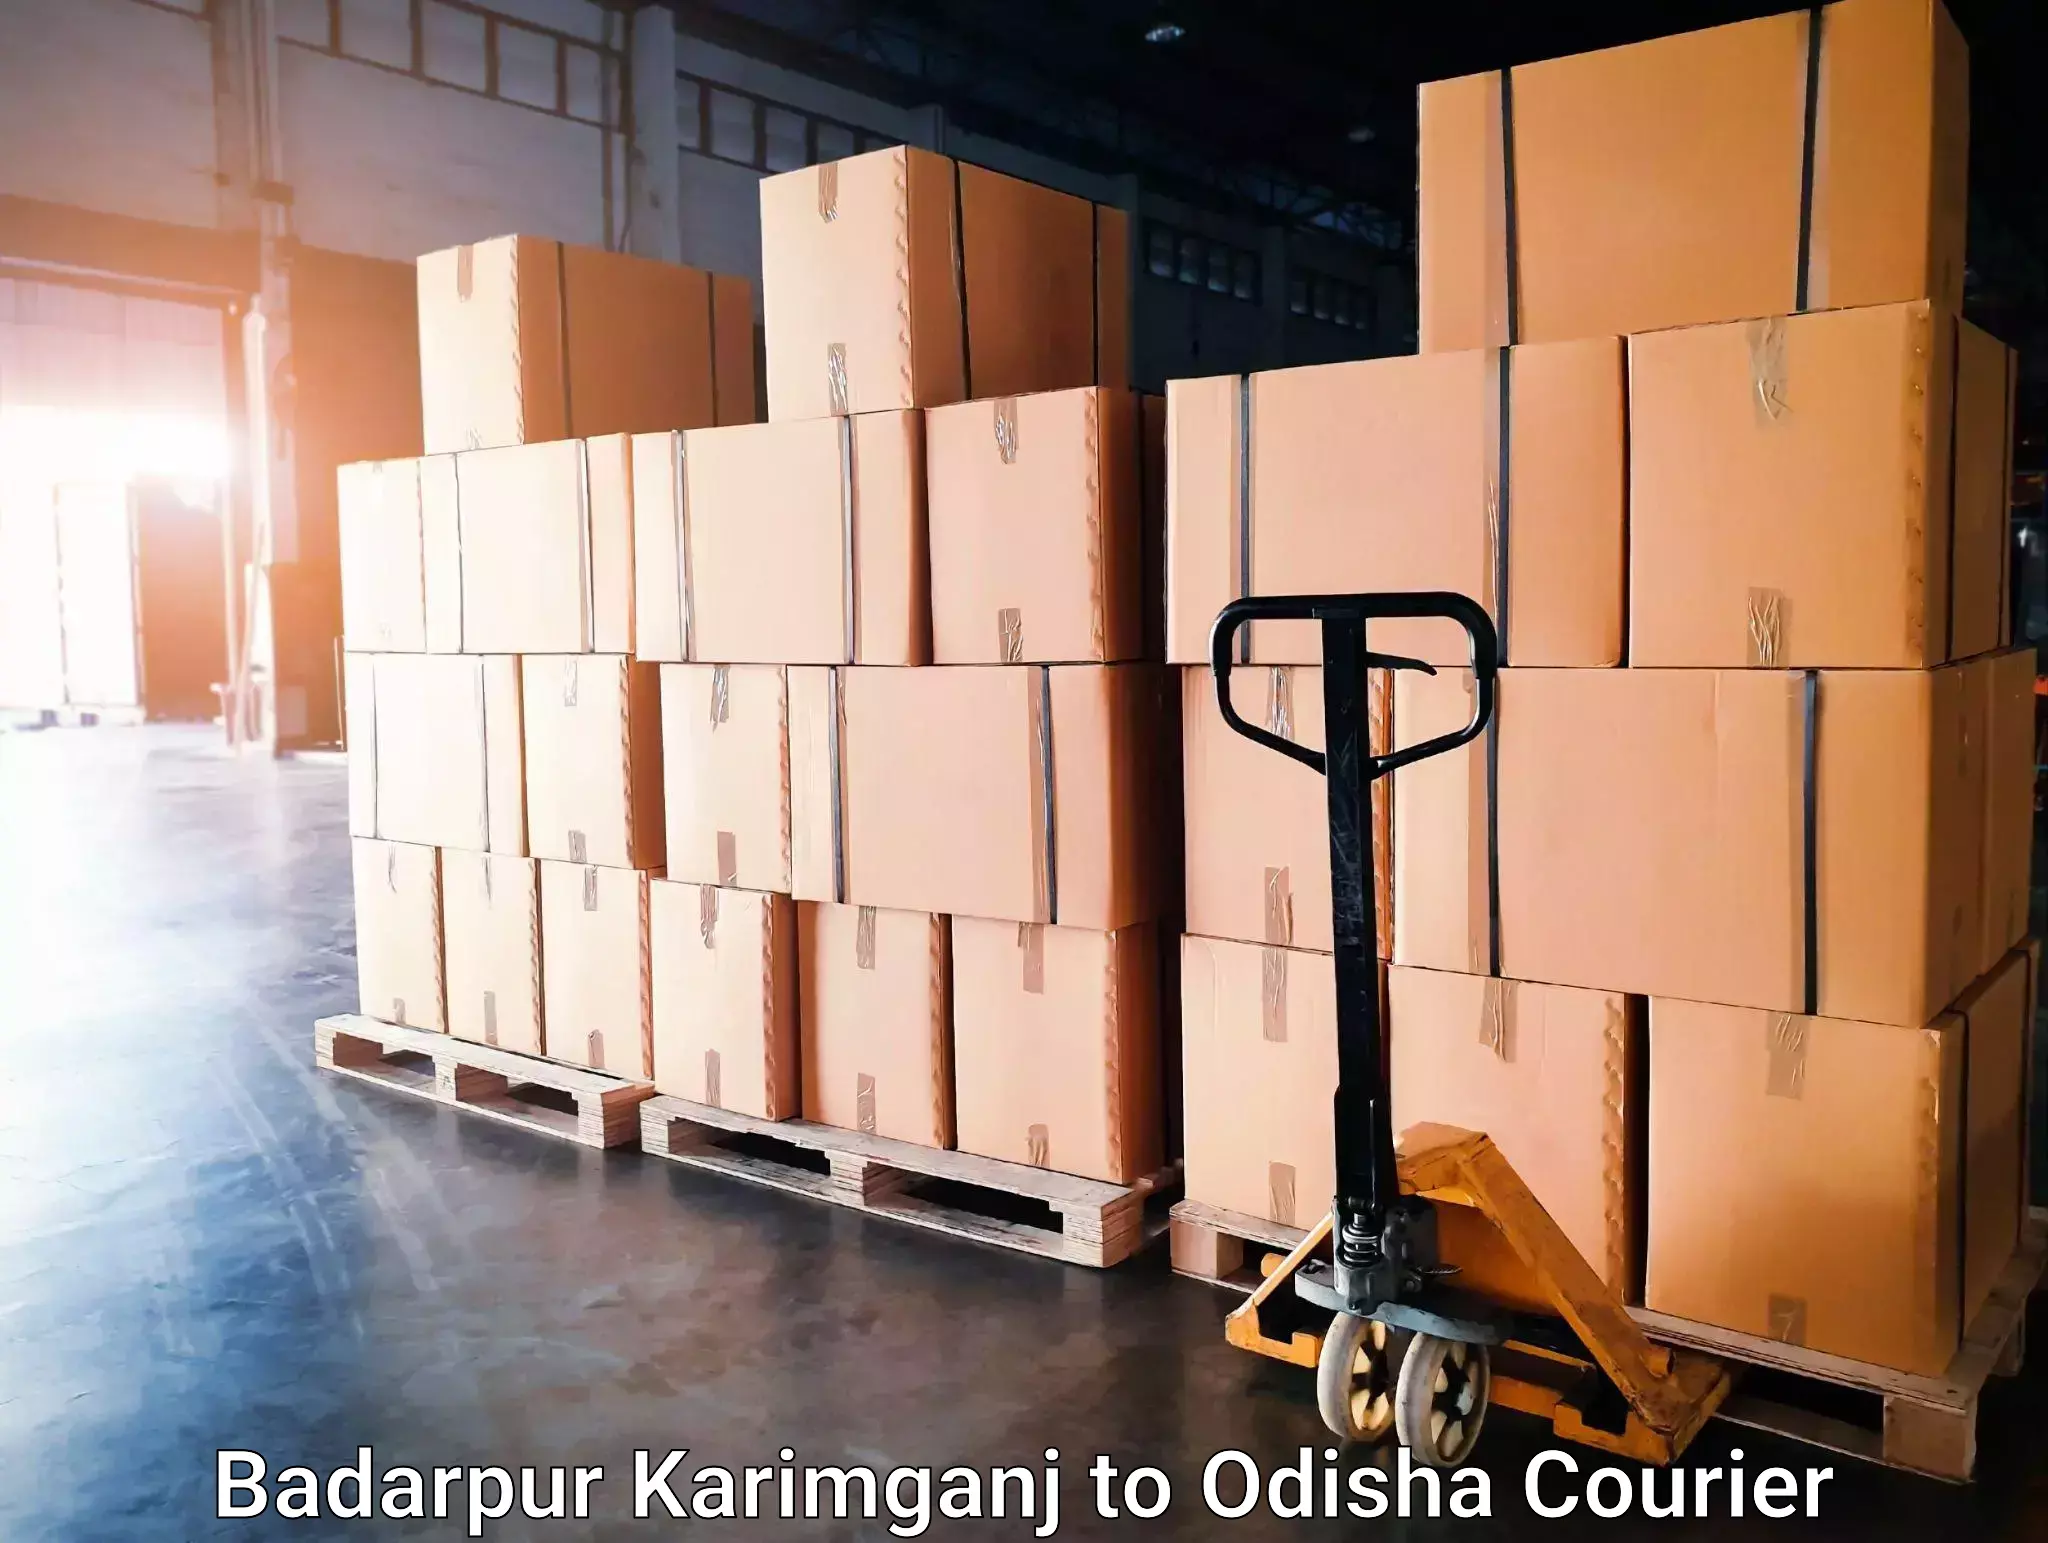 Global courier networks Badarpur Karimganj to Behrampur